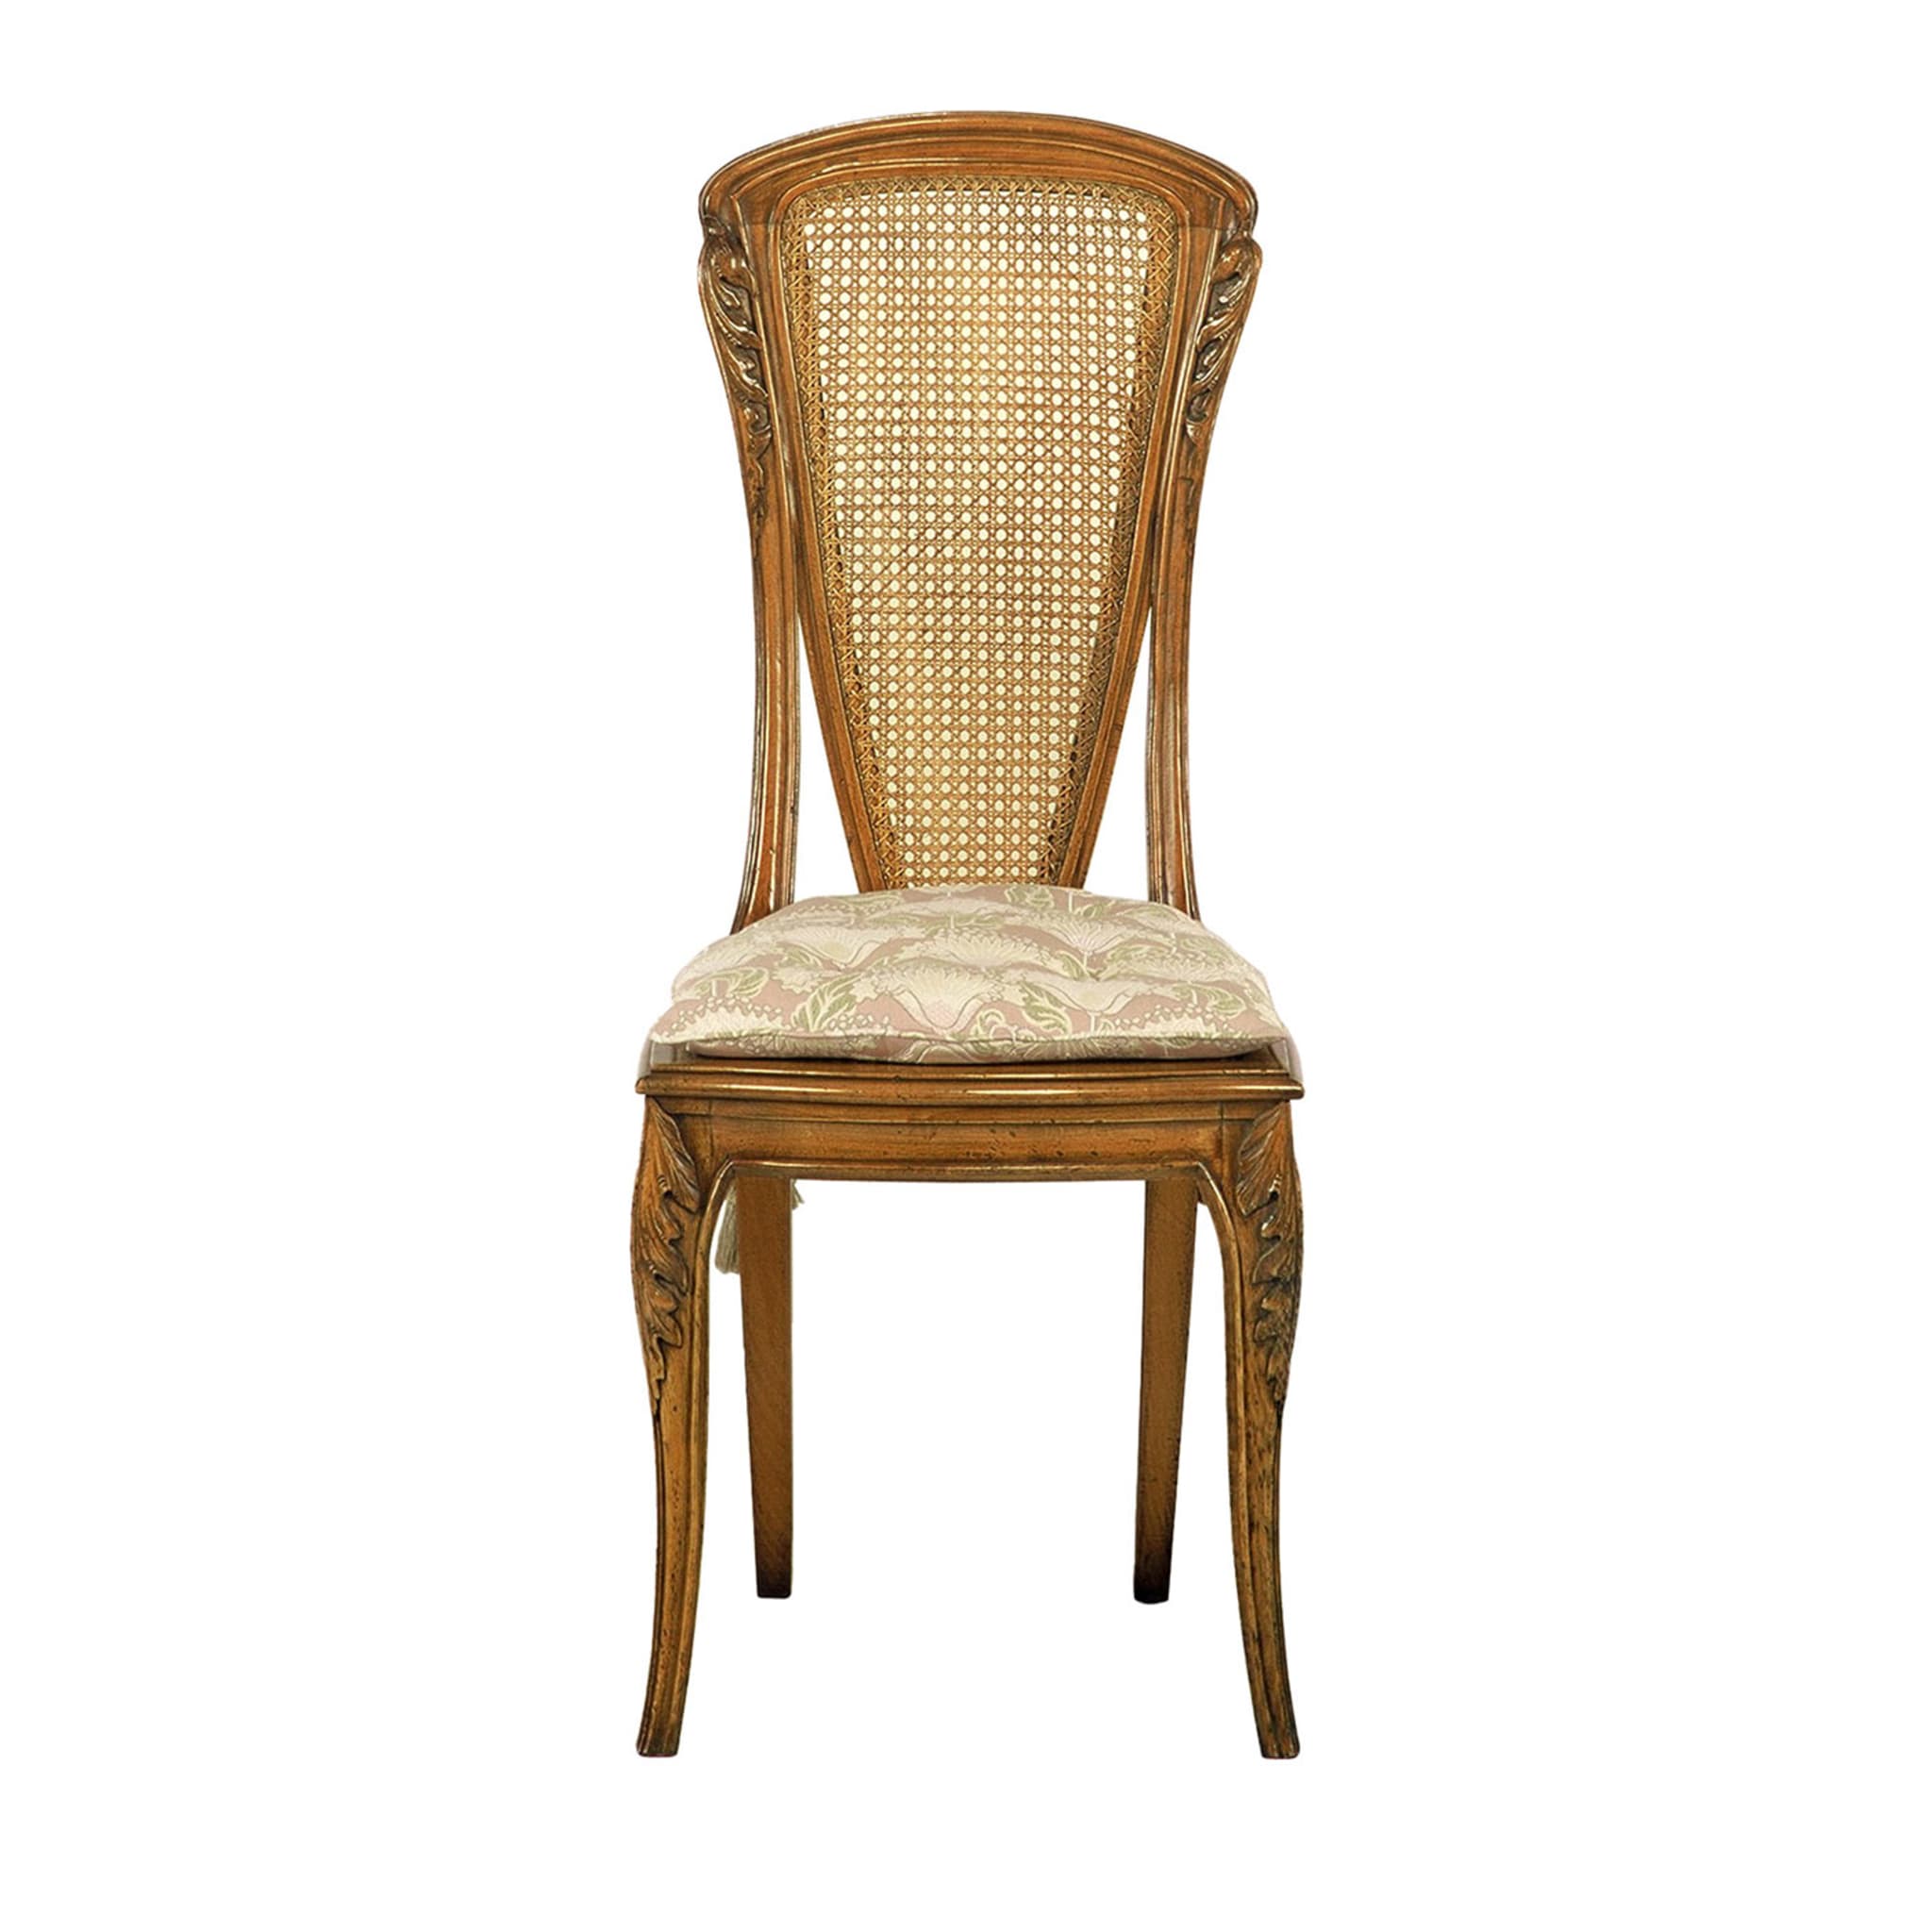 Chaise de style Art nouveau français par Louis Majorelle - Vue principale